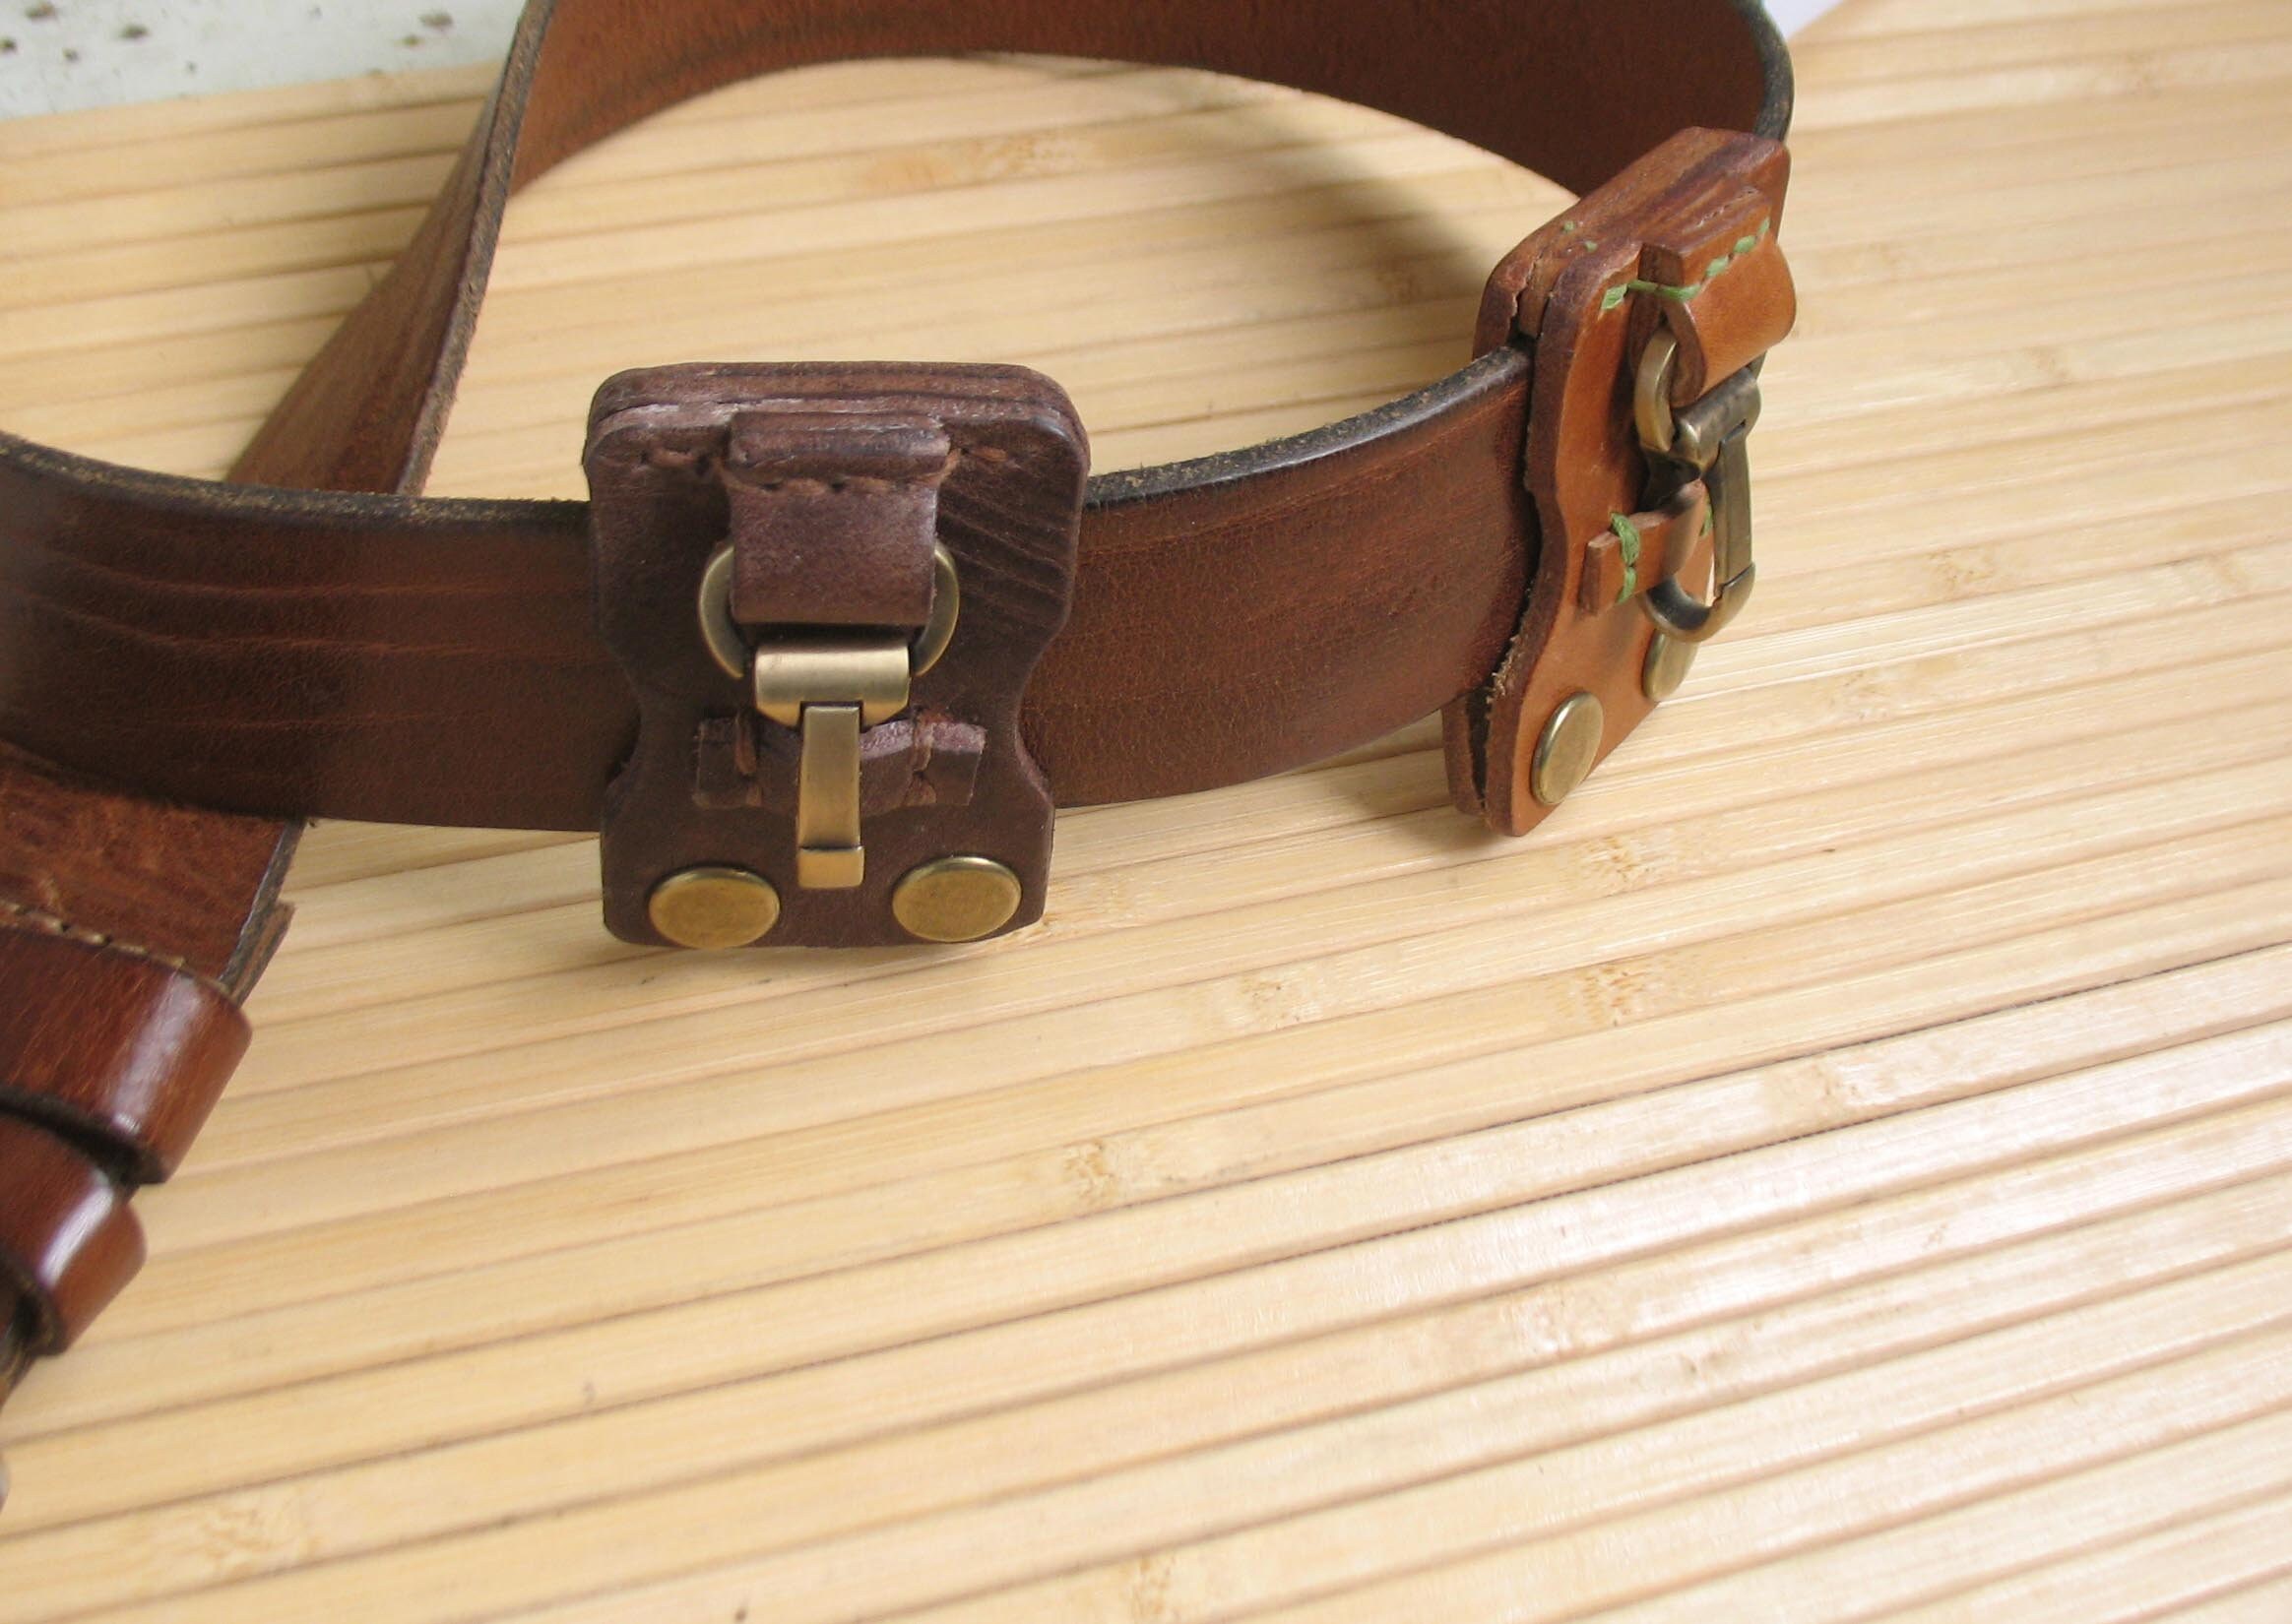 D&M Leather Studio Full Grain Leather Belt Key Holder / Distressed Leather Belt Hook Clip for Keys